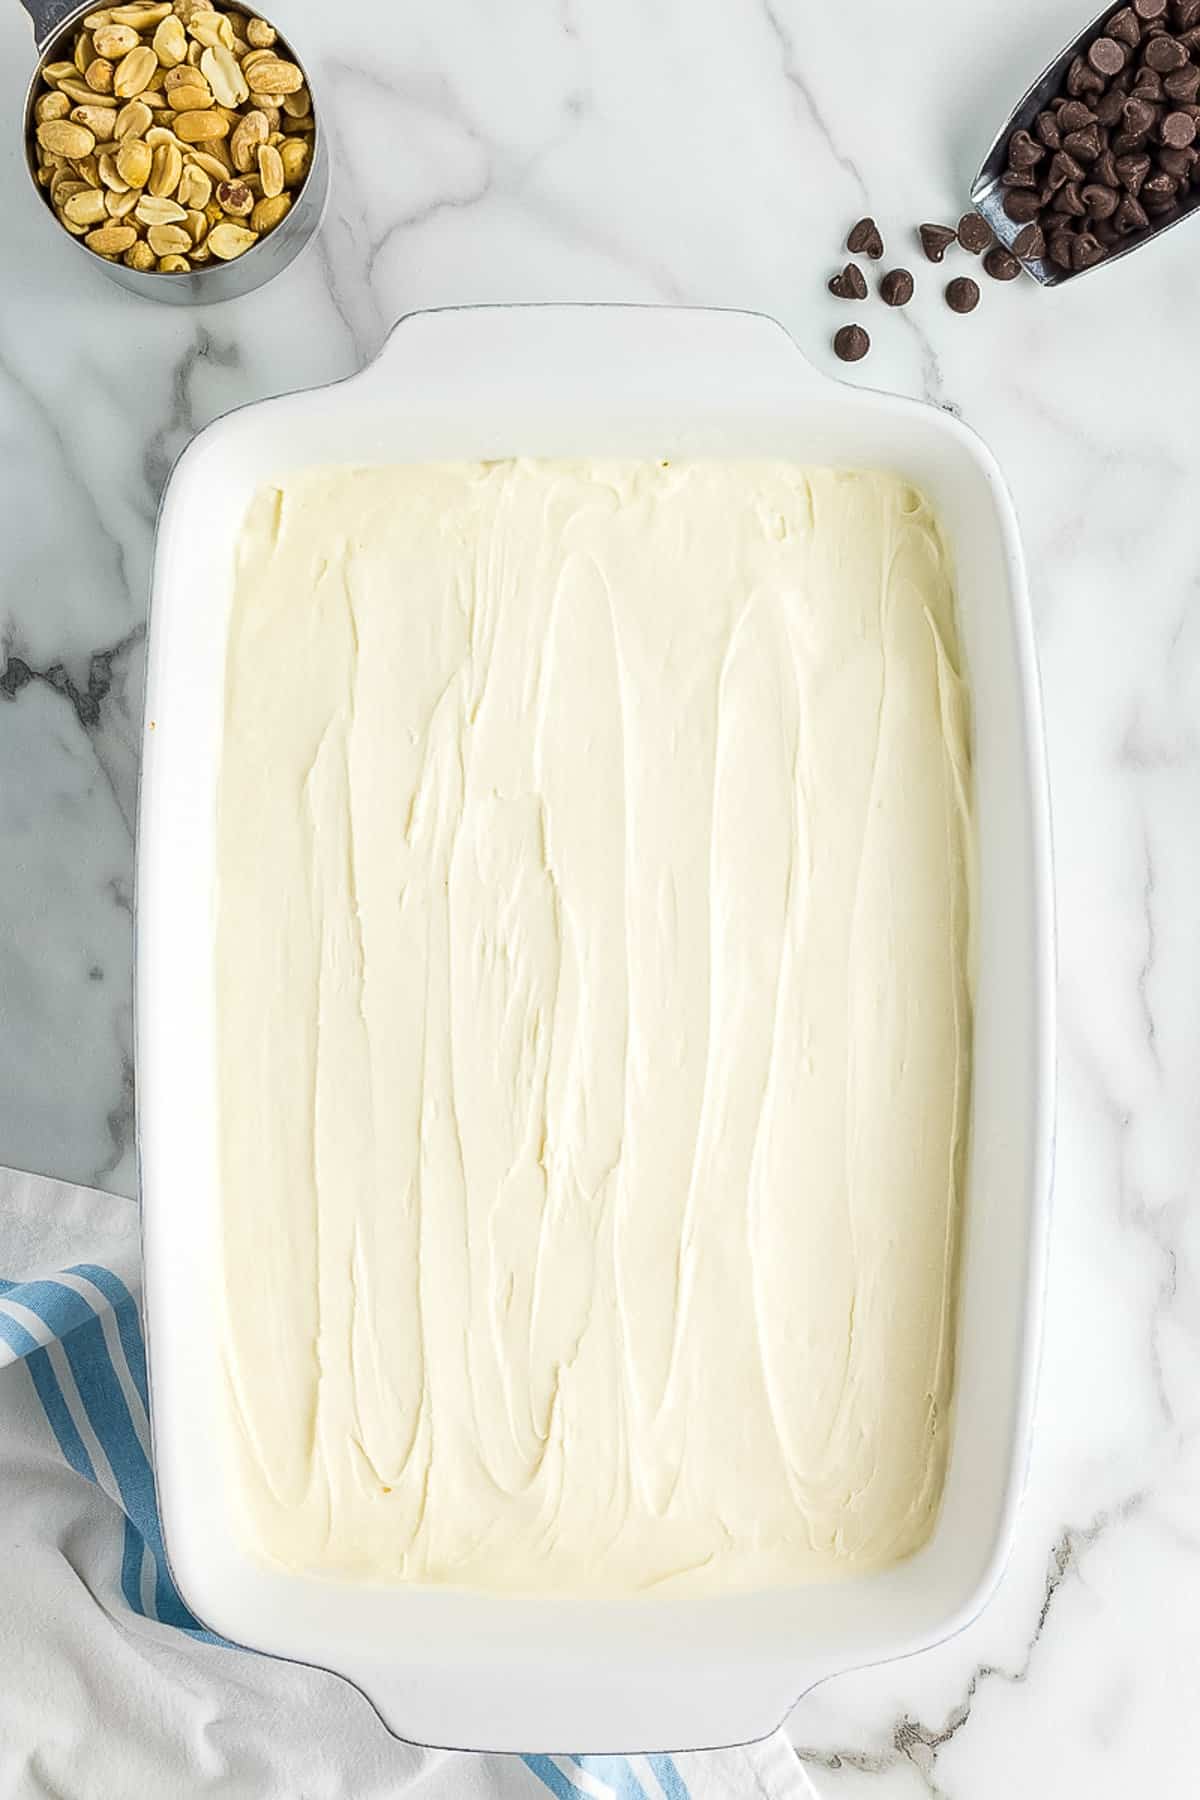 White Casserole dish with a layer of vanilla ice cream